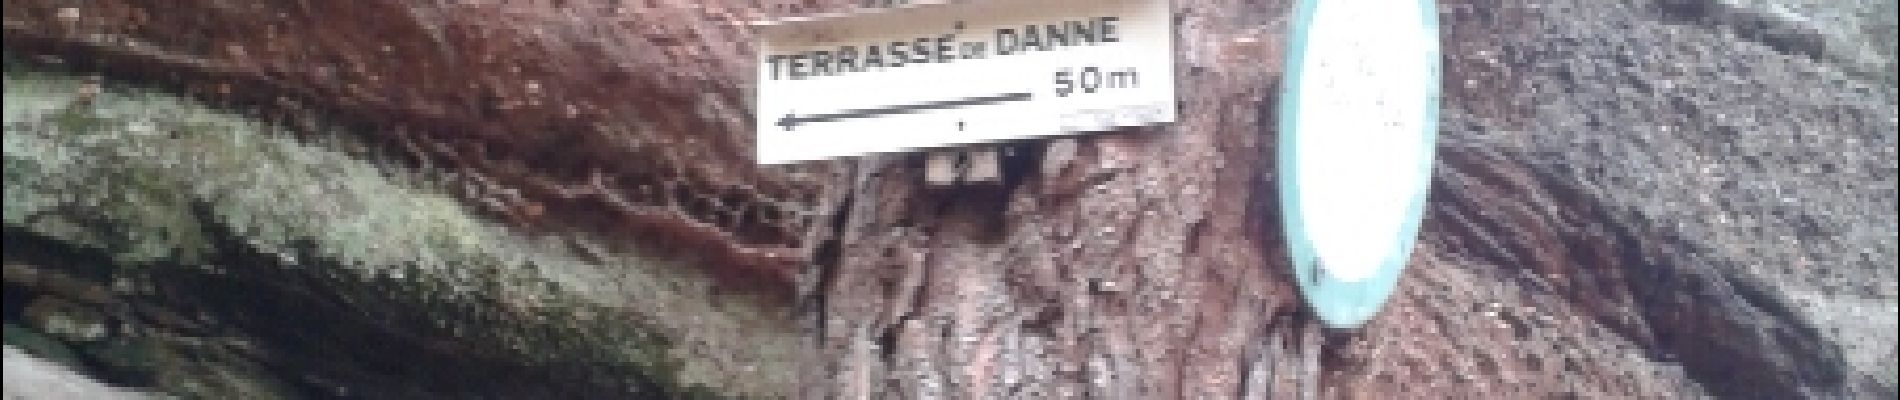 Point of interest Danne-et-Quatre-Vents - terrasse de danne - Photo